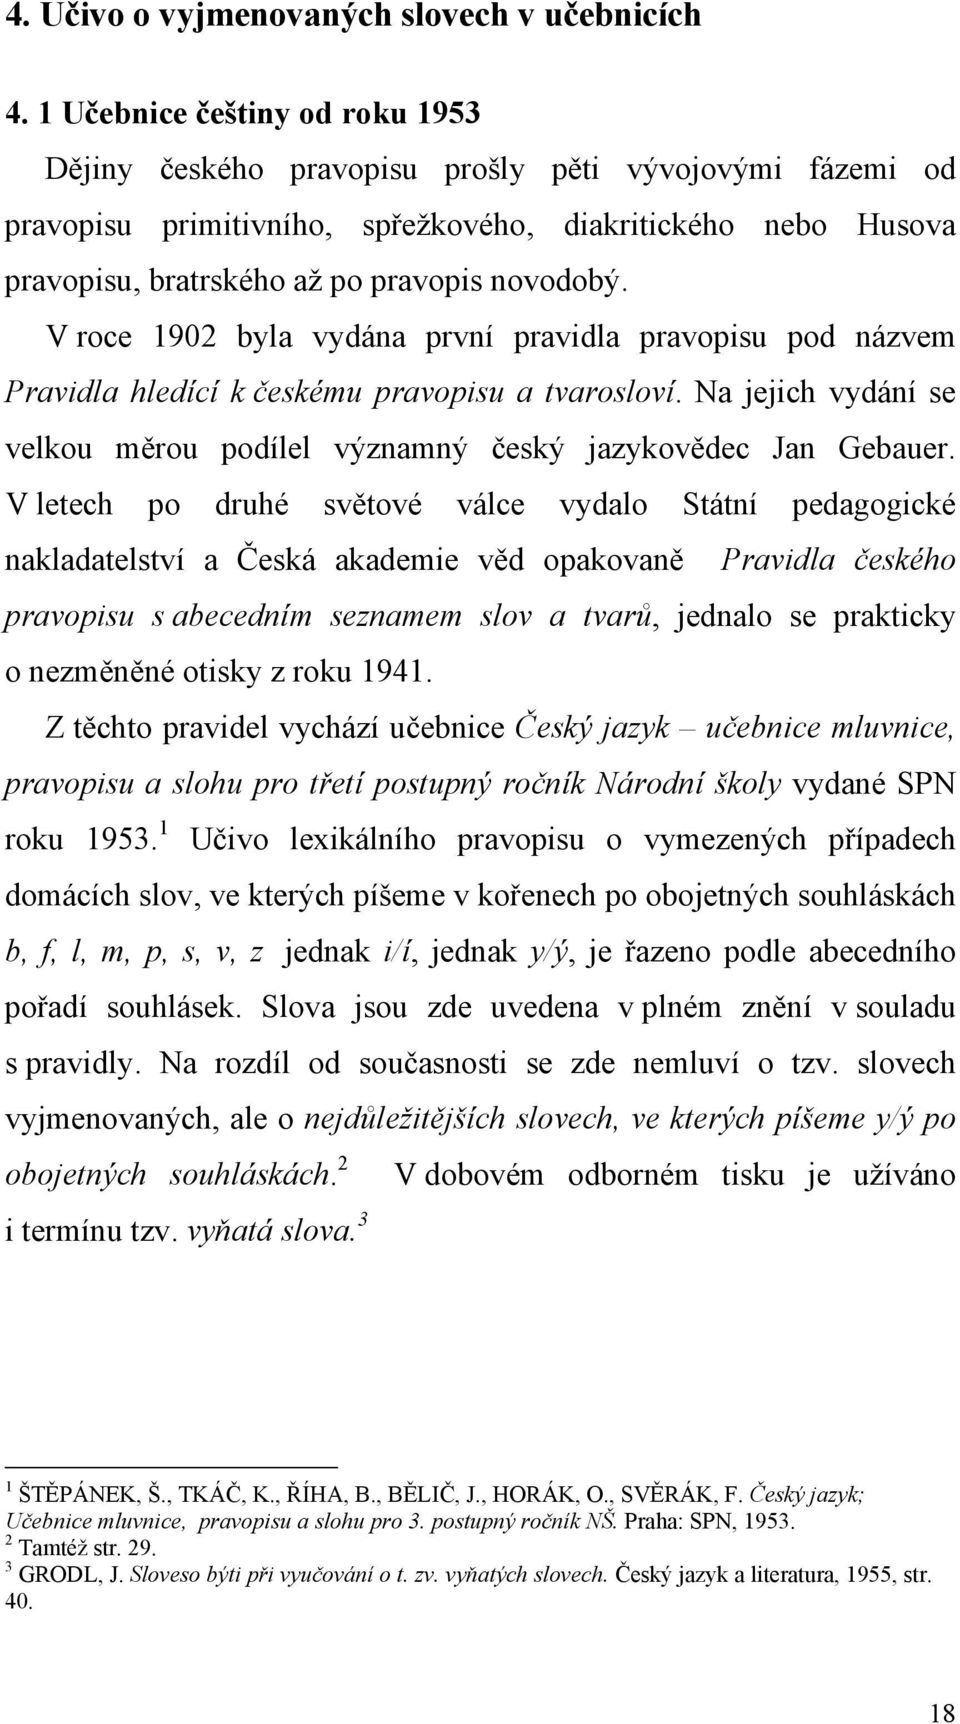 V roce 1902 byla vydána první pravidla pravopisu pod názvem Pravidla hledící k českému pravopisu a tvarosloví. Na jejich vydání se velkou měrou podílel významný český jazykovědec Jan Gebauer.